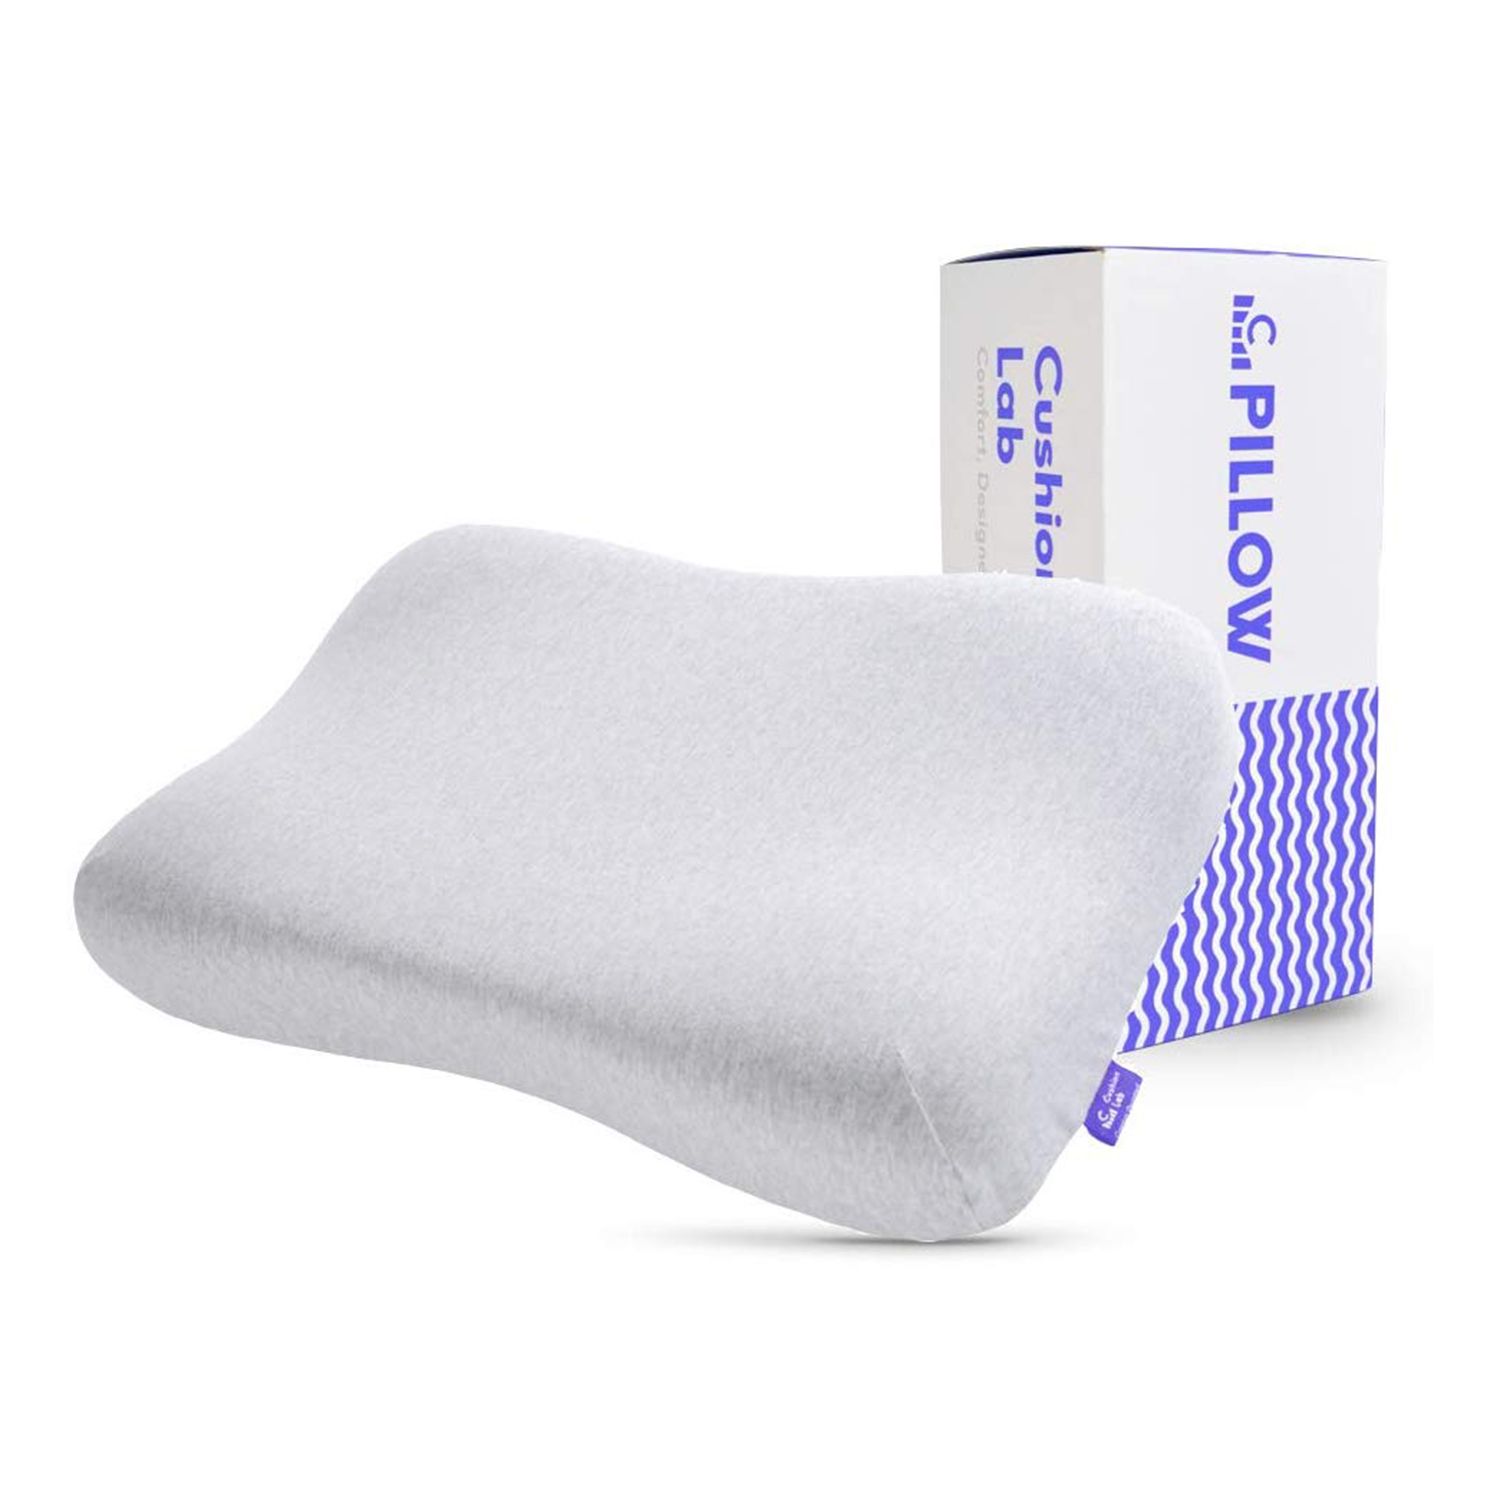 Cushion Lab Plush Comfort Gel ներծծված հիշողության փրփուրի եզրագծային բարձ